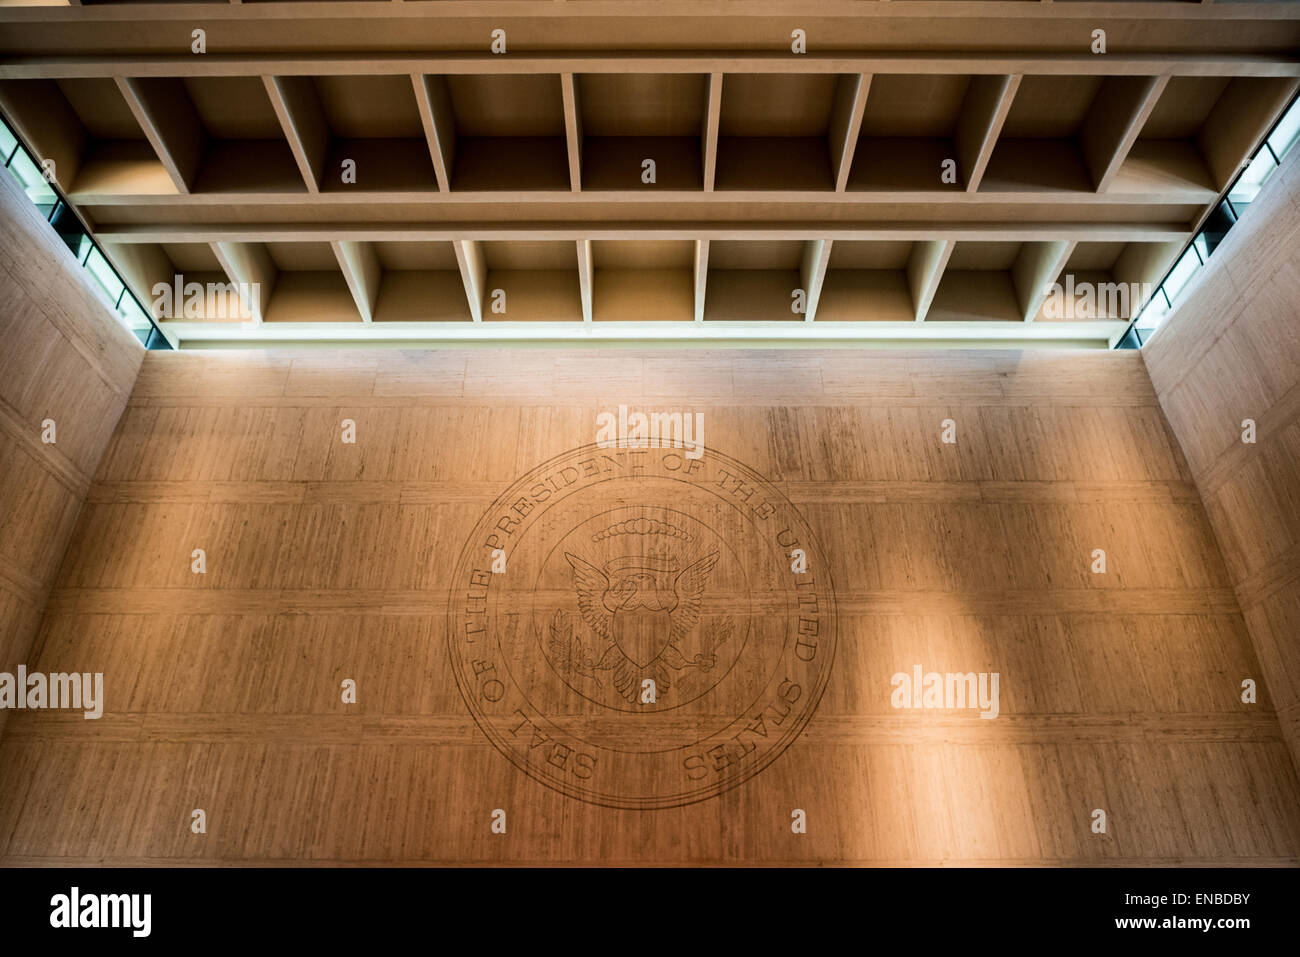 AUSTIN, Texas - Un grand sceau présidentiel est gravé dans le mur d'un grand atrium intérieur à la bibliothèque LBJ. La bibliothèque et le musée LBJ (LBJ Presidential Library) est l'une des 13 bibliothèques présidentielles administrées par la National Archives and Records Administration. Il abrite des documents historiques de la présidence et de la vie politique de Lyndon Johnson ainsi qu'un musée. Banque D'Images